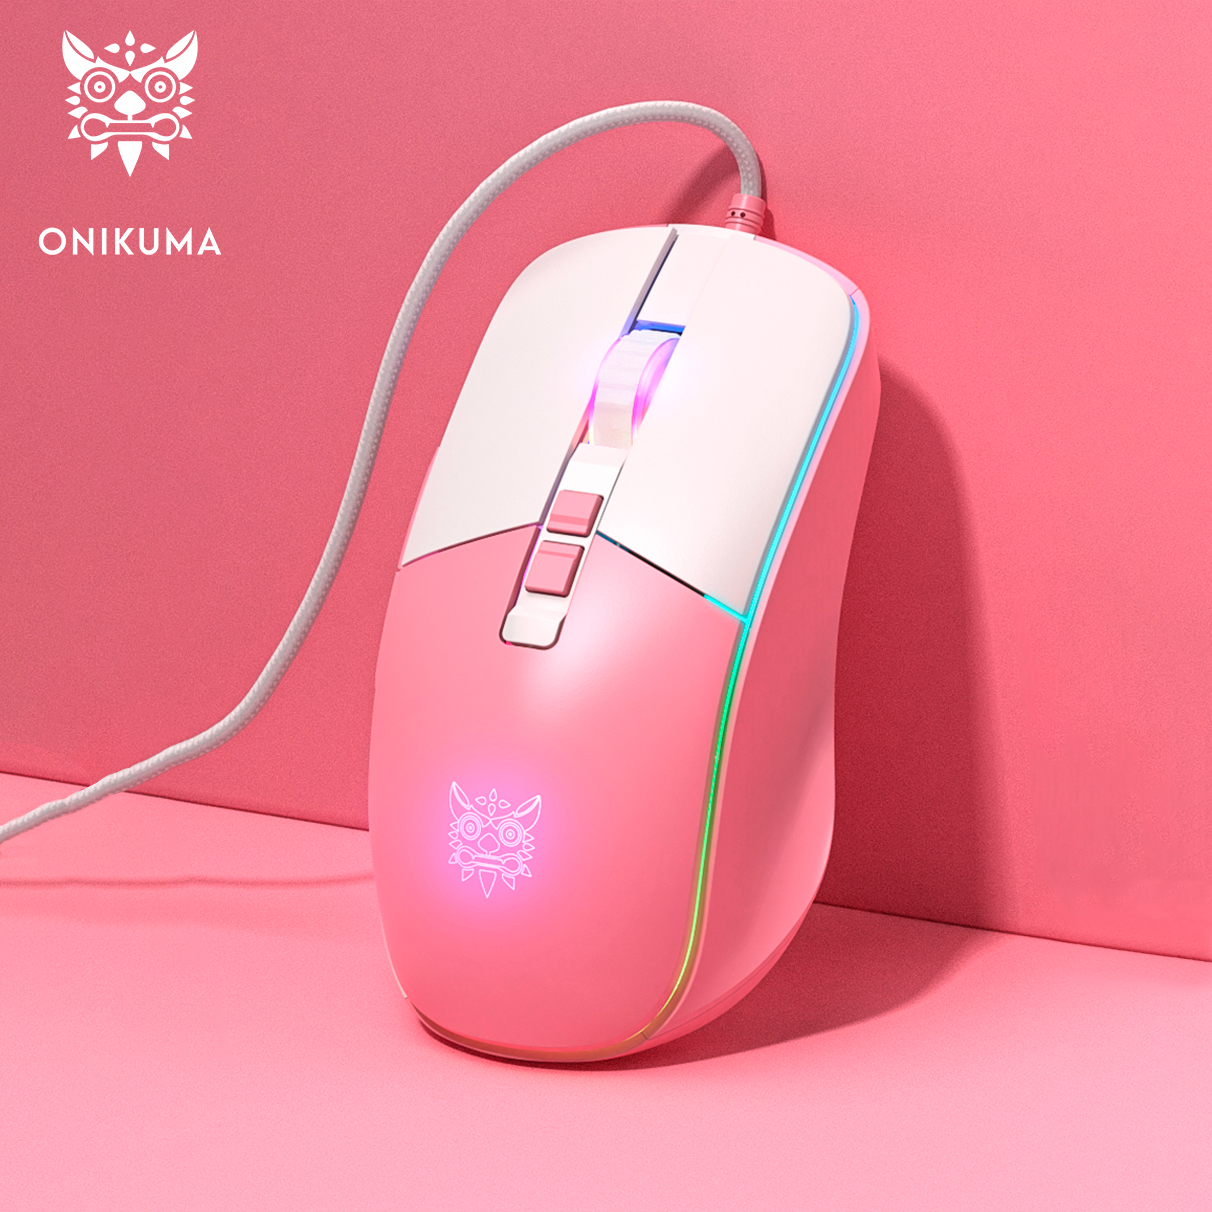 Проводная мышь Onikuma CW916 белый, розовый